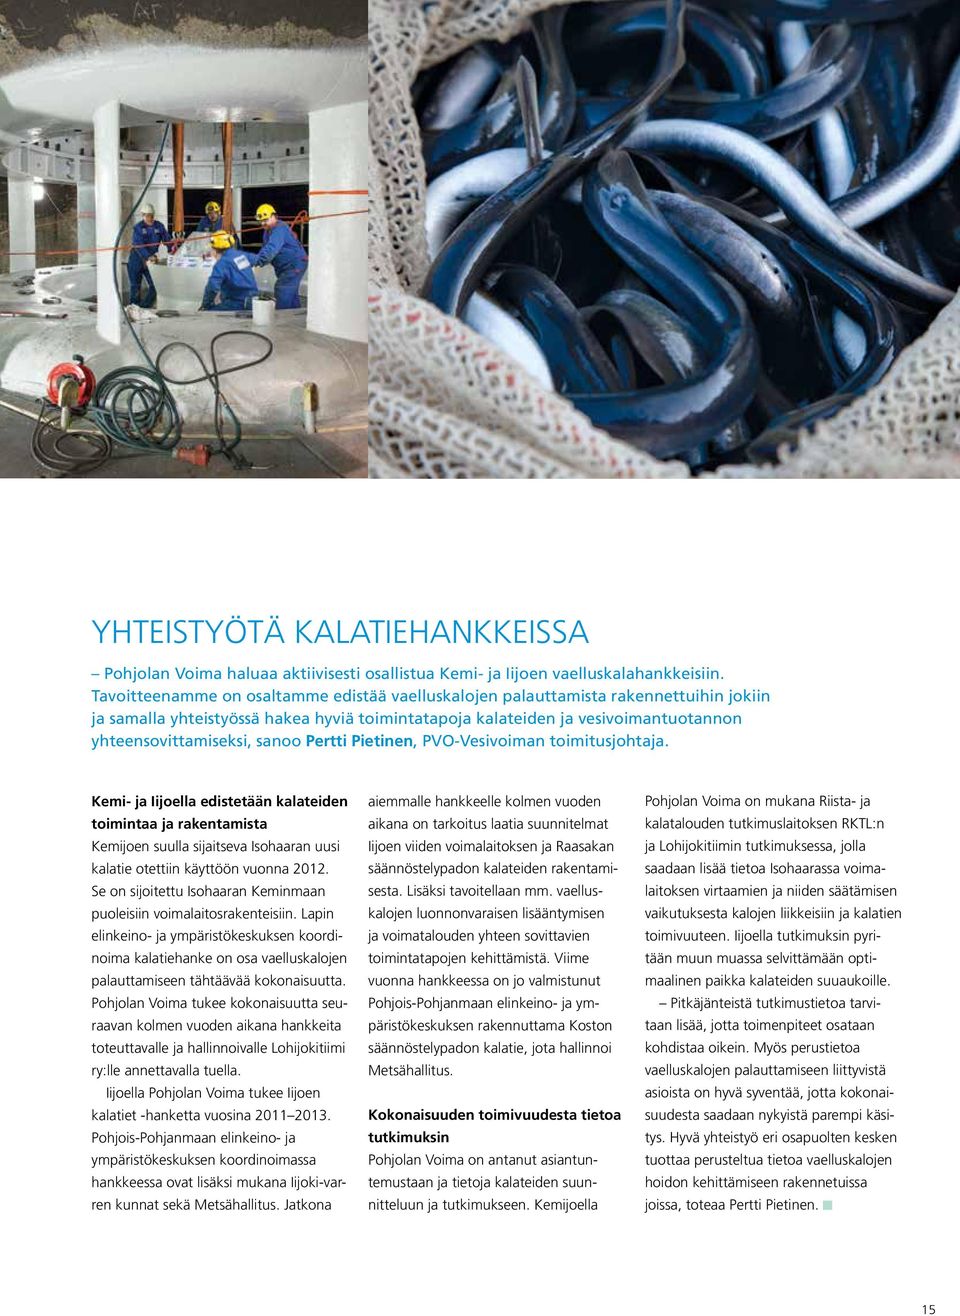 Pertti Pietinen, PVO-Vesivoiman toimitusjohtaja. Kemi- ja Iijoella edistetään kalateiden toimintaa ja rakentamista Kemijoen suulla sijaitseva Isohaaran uusi kalatie otettiin käyttöön vuonna 2012.